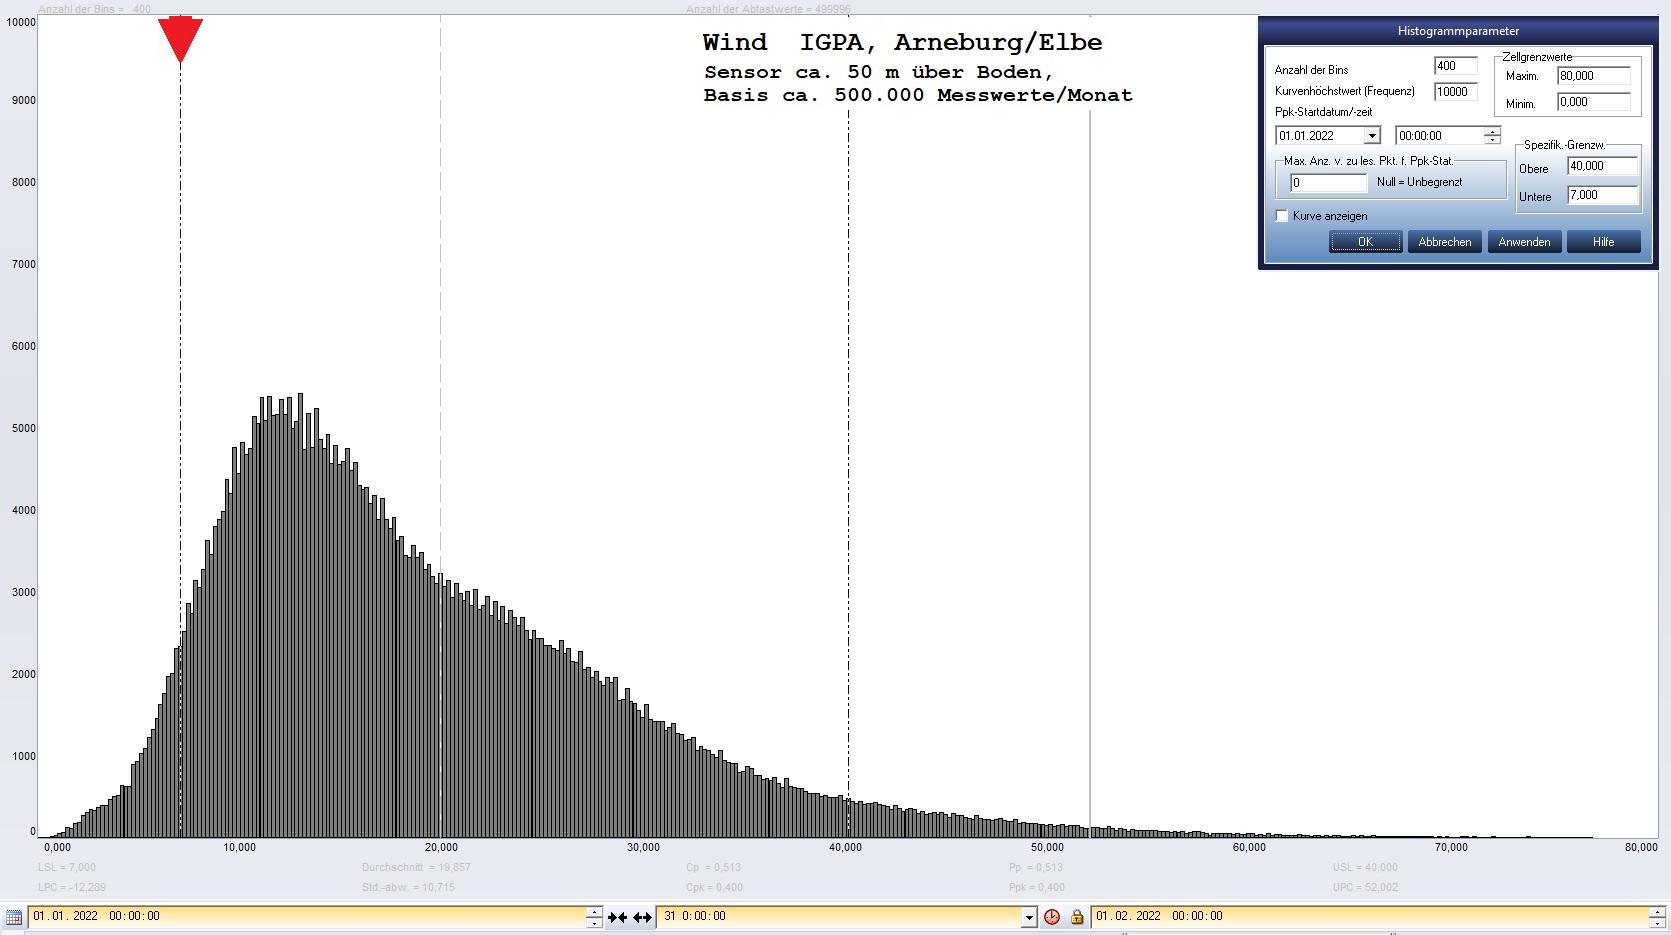 Arneburg Histogramm Winddaten Monat Januar 2022, 
  Sensor auf Gebude, ca. 50 m ber Erdboden, Basis: 5s-Aufzeichnung